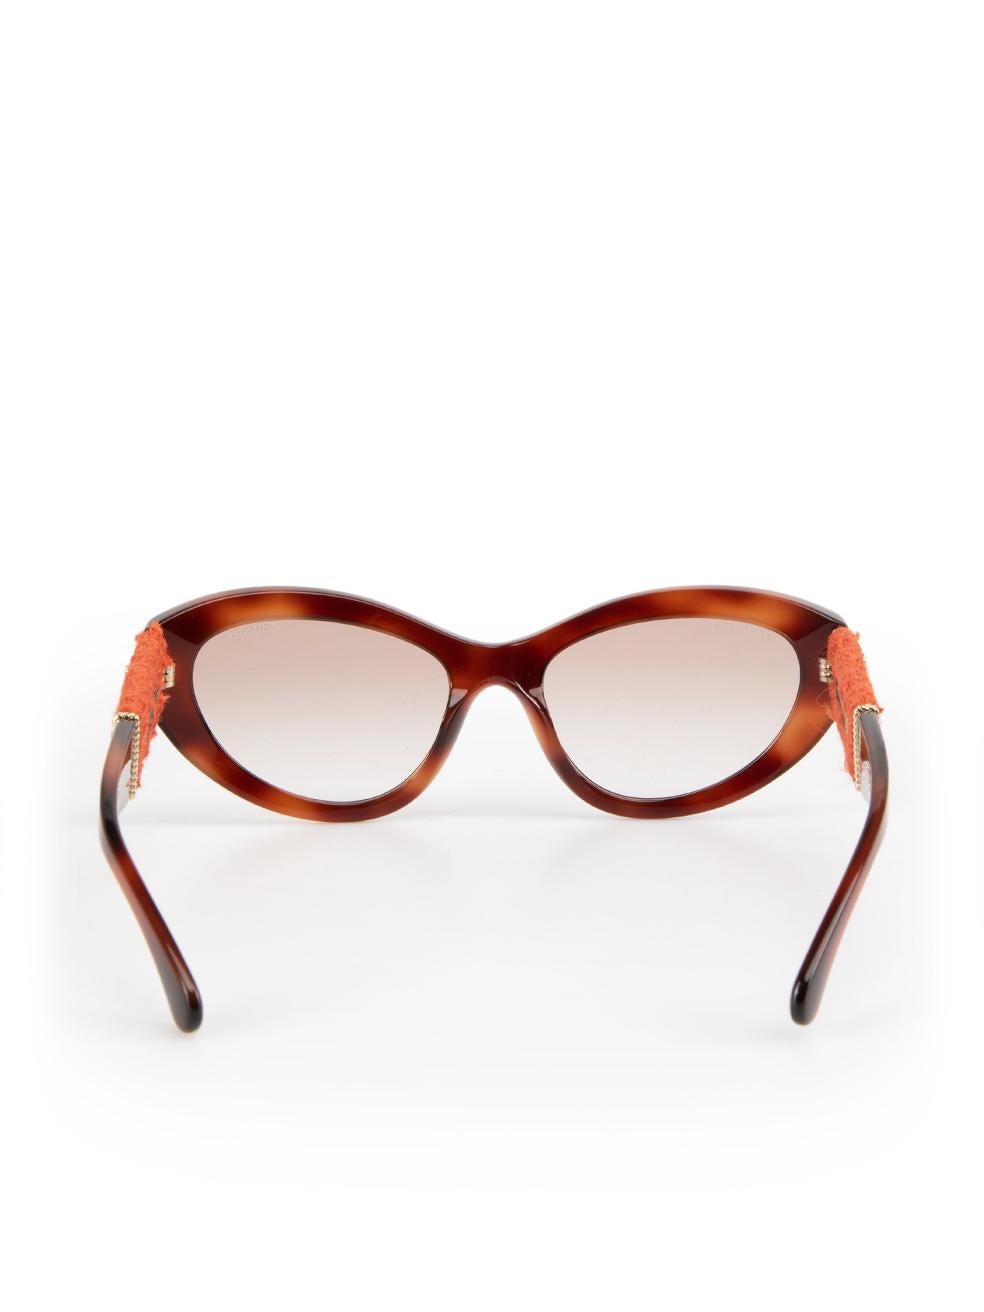 Women's Chanel Havana Brown Tortoiseshell Cat Eye Sunglasses For Sale